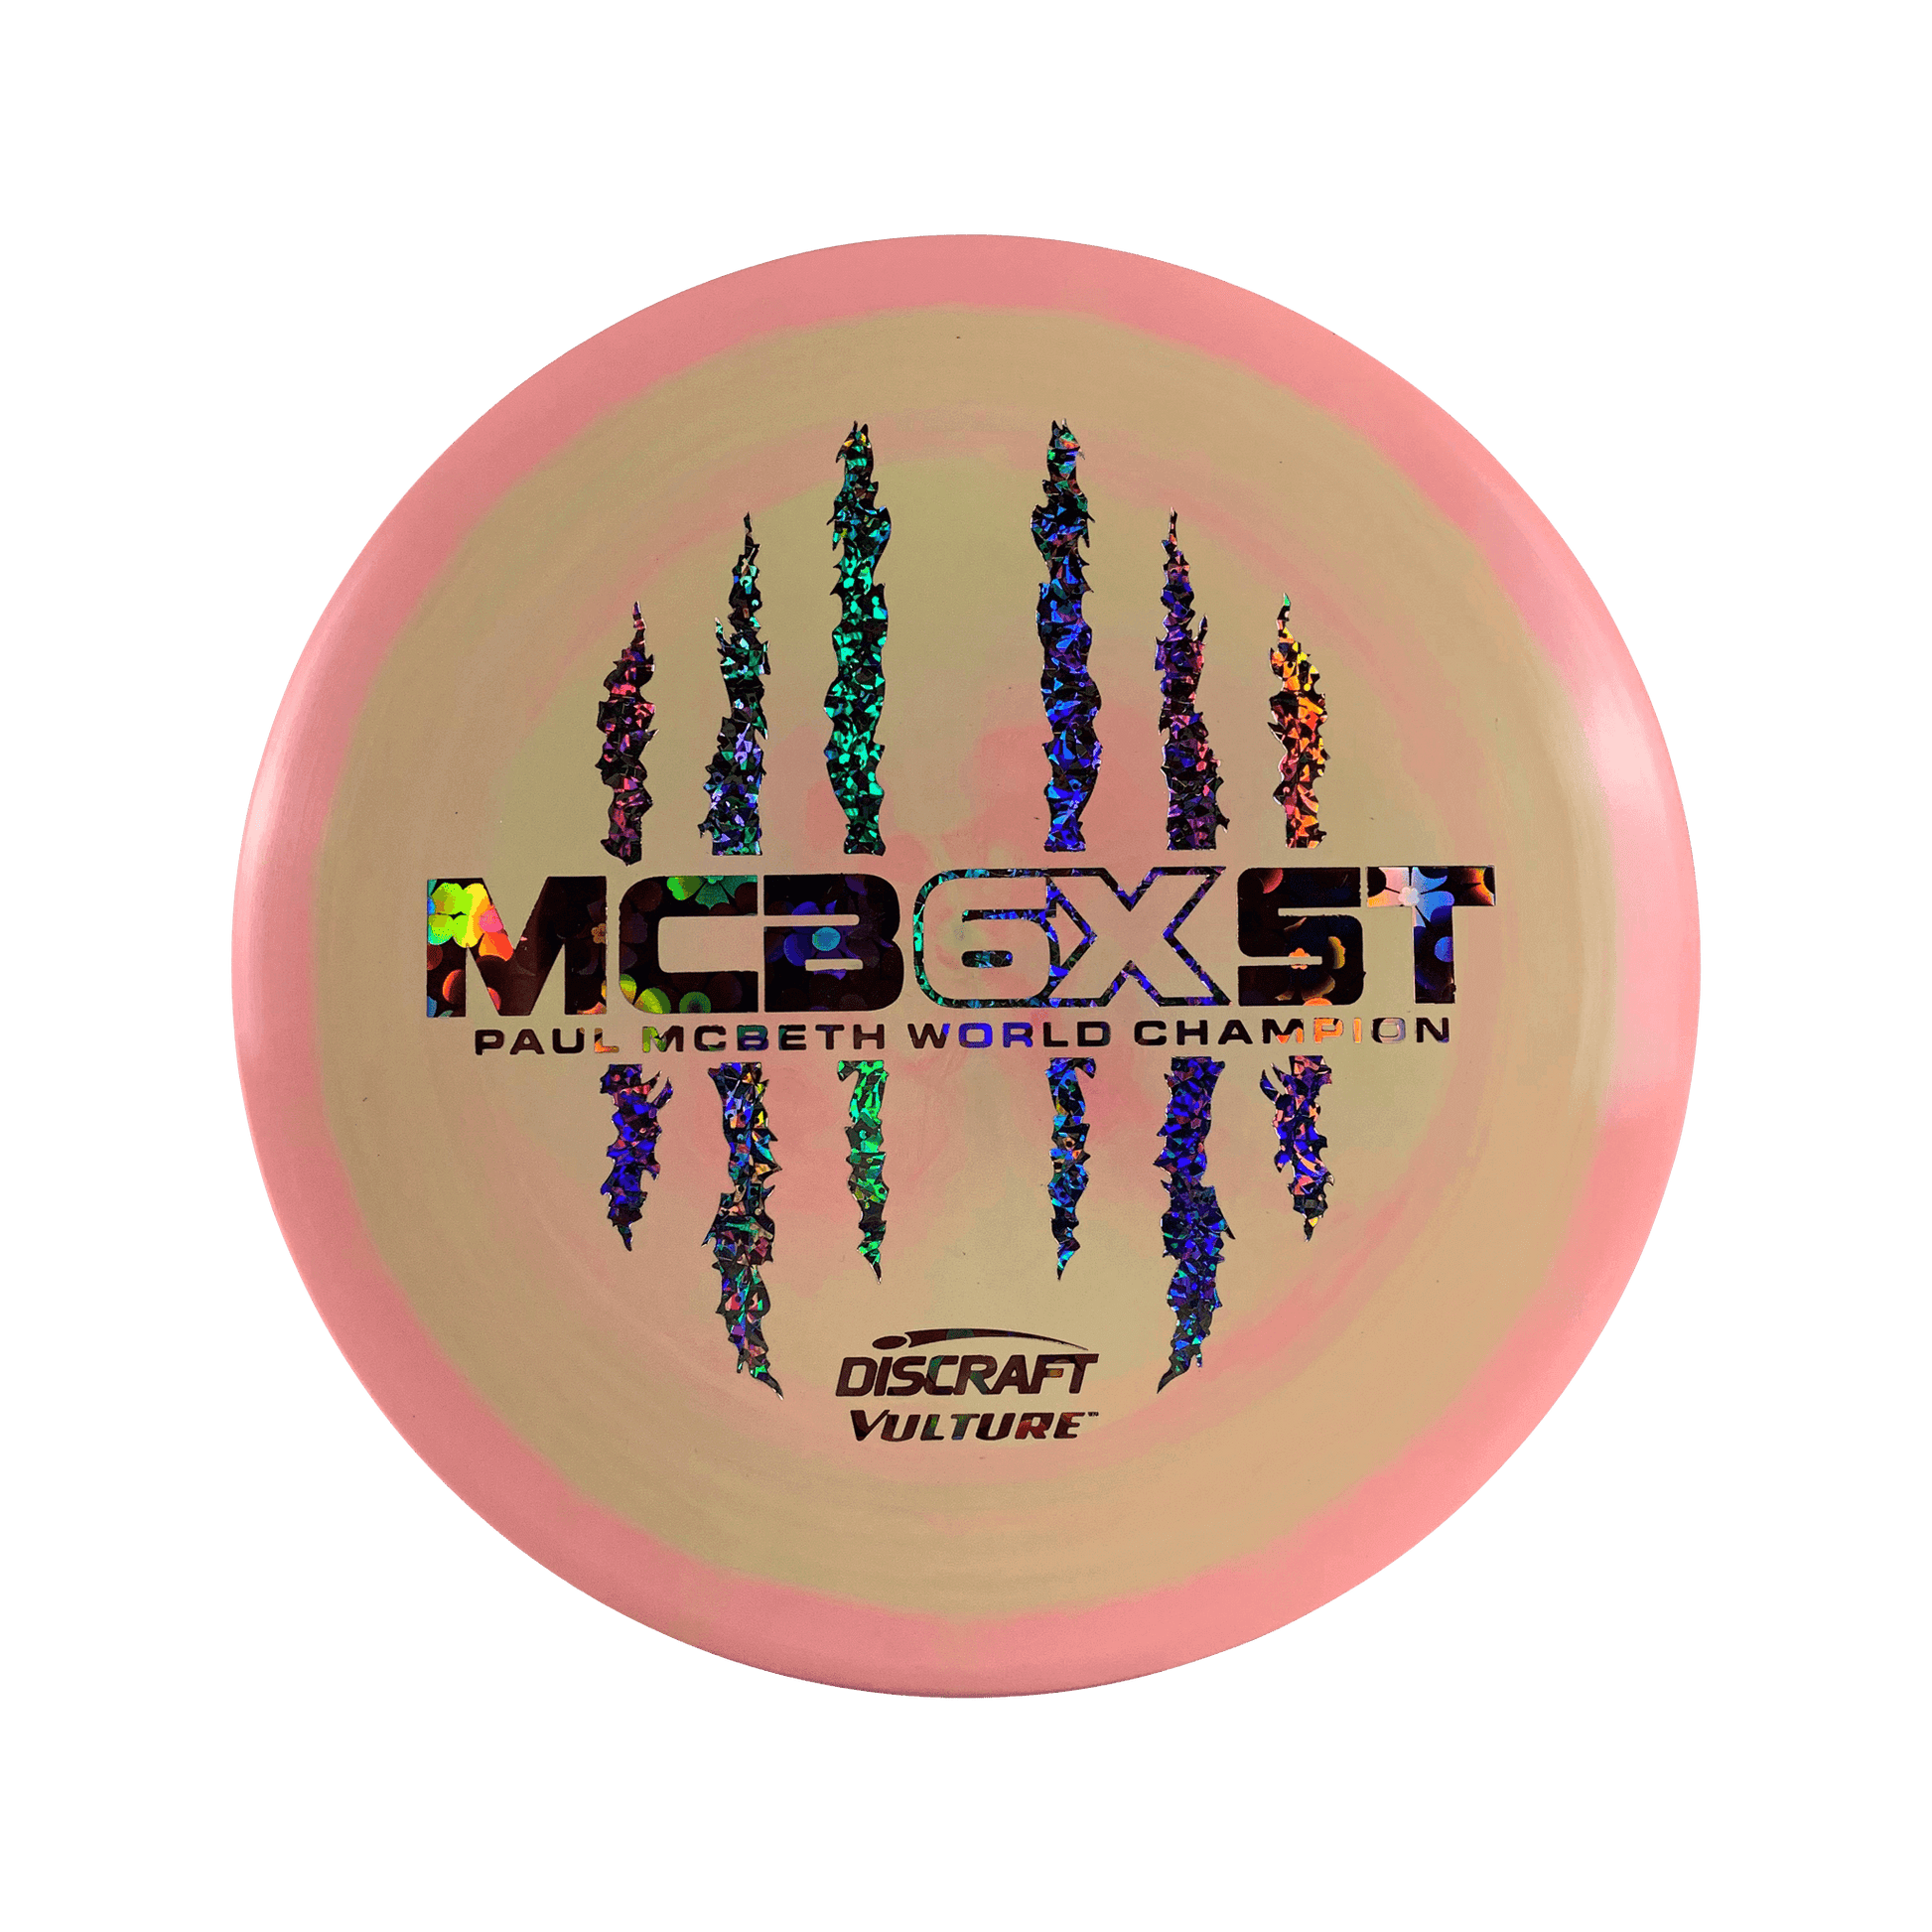 ESP Vulture - Paul McBeth 6x Claw Disc Discraft multi / light pink 175 